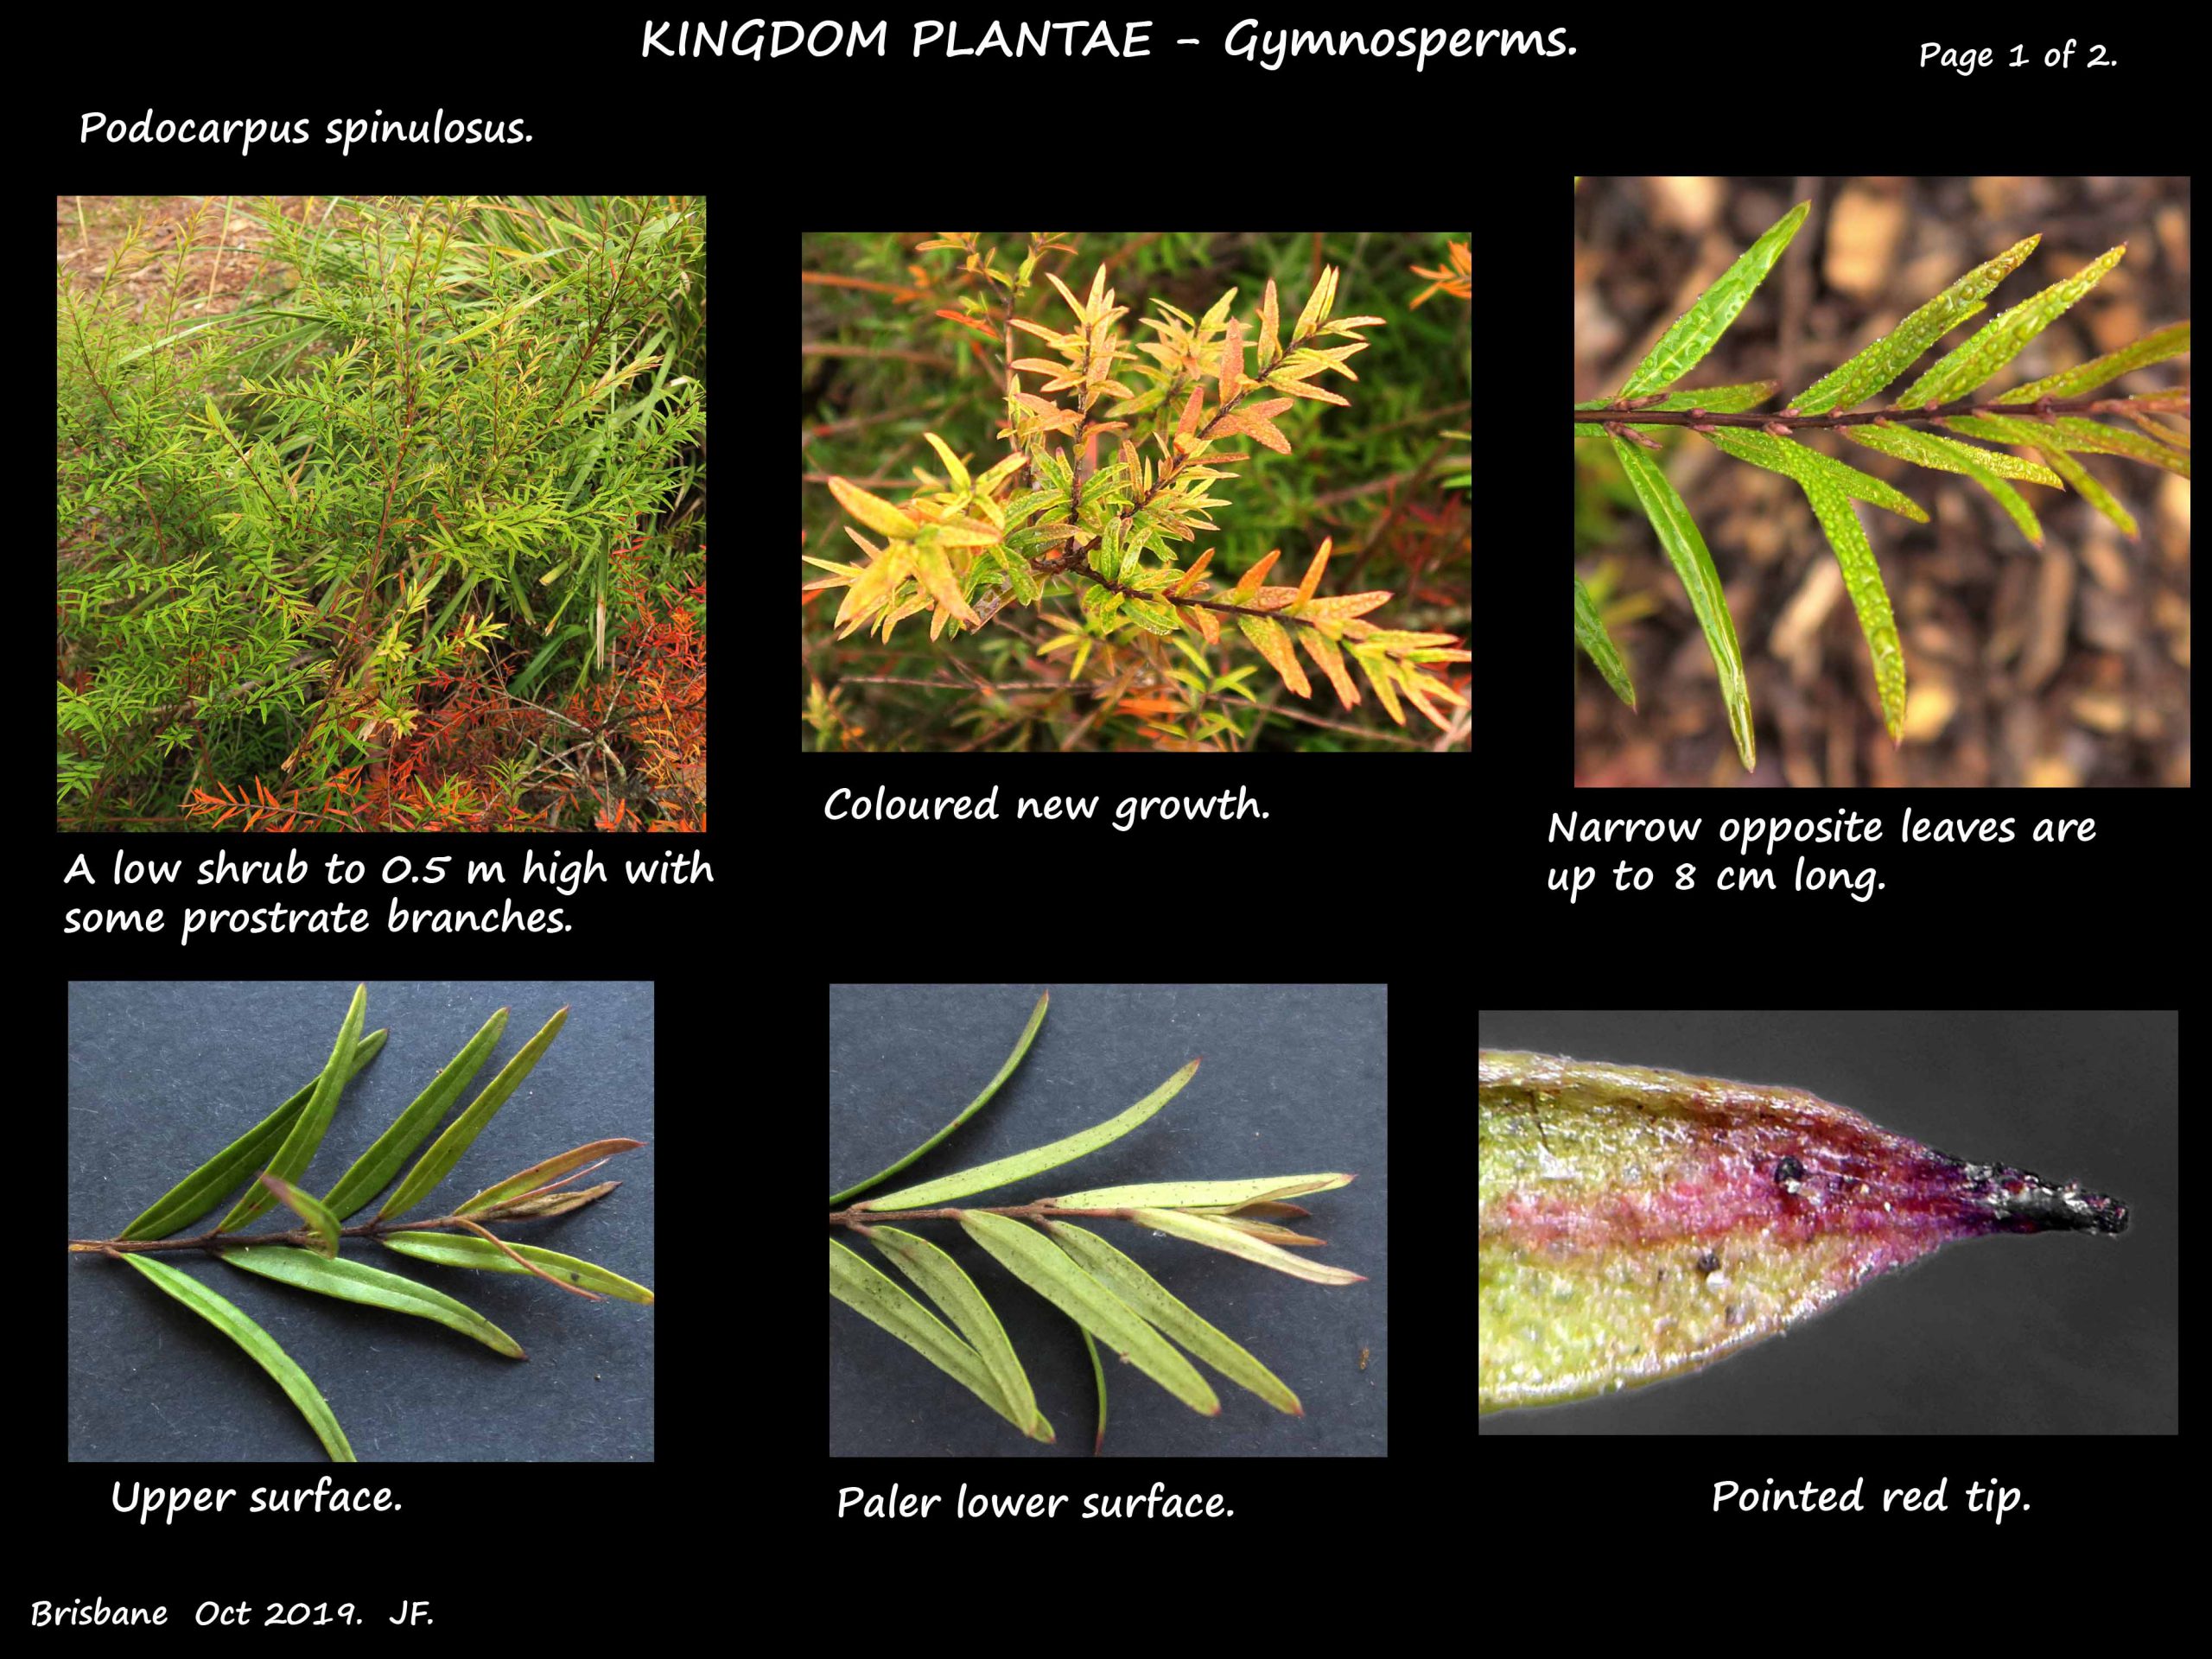 1 Podocarpus spinulosus shrub & leaves